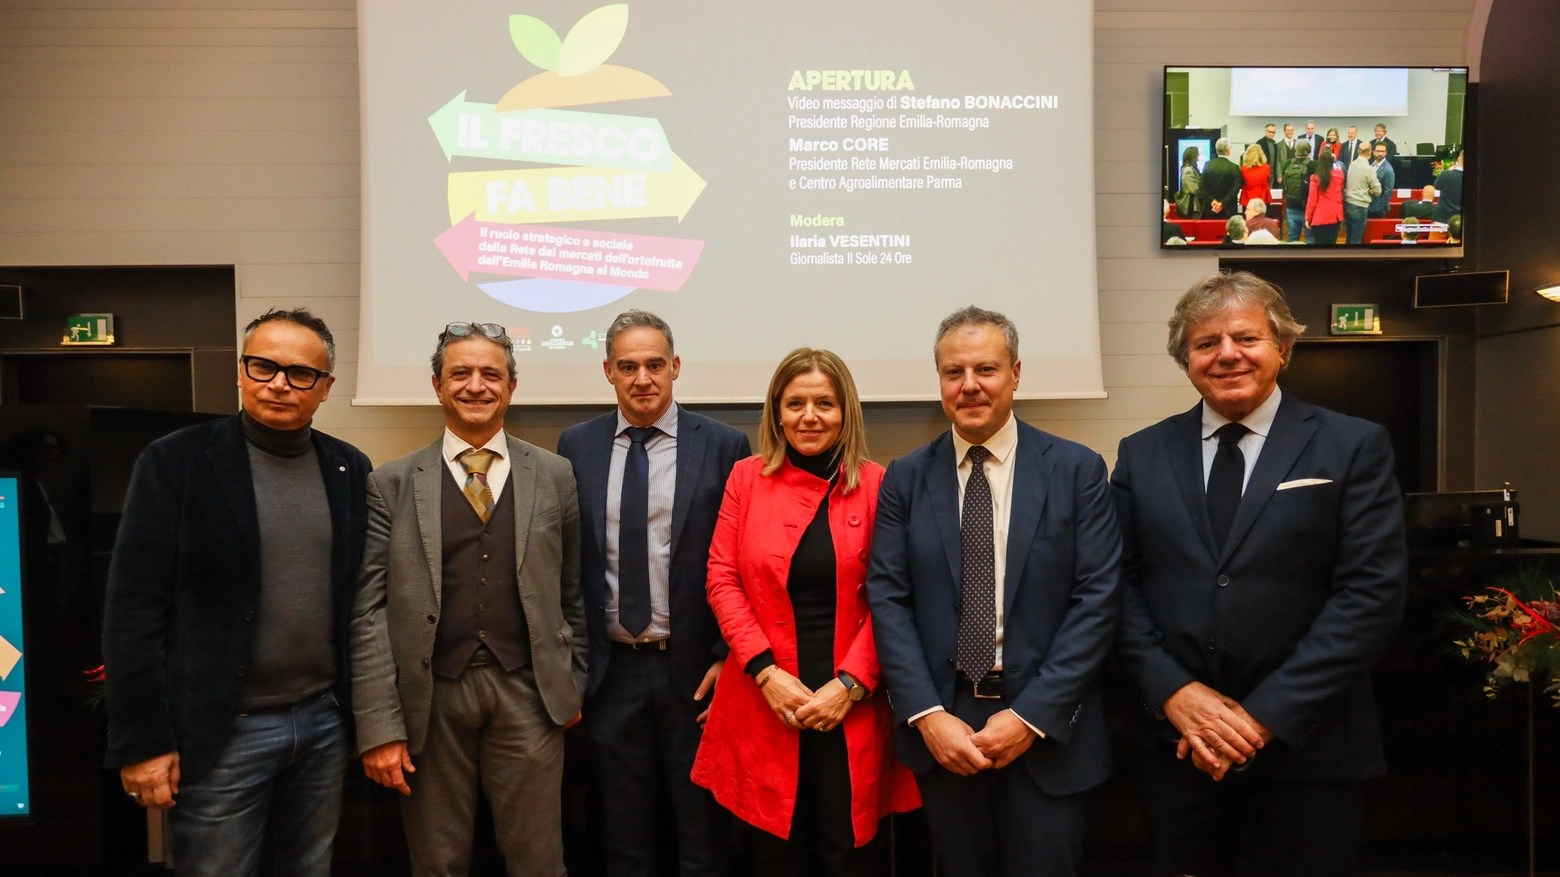 Foto di gruppo del convegno "Il fresco fa bene!" promosso dalla Rete dei mercati agroalimentari dell'Emilia-Romagna e dalla Regione